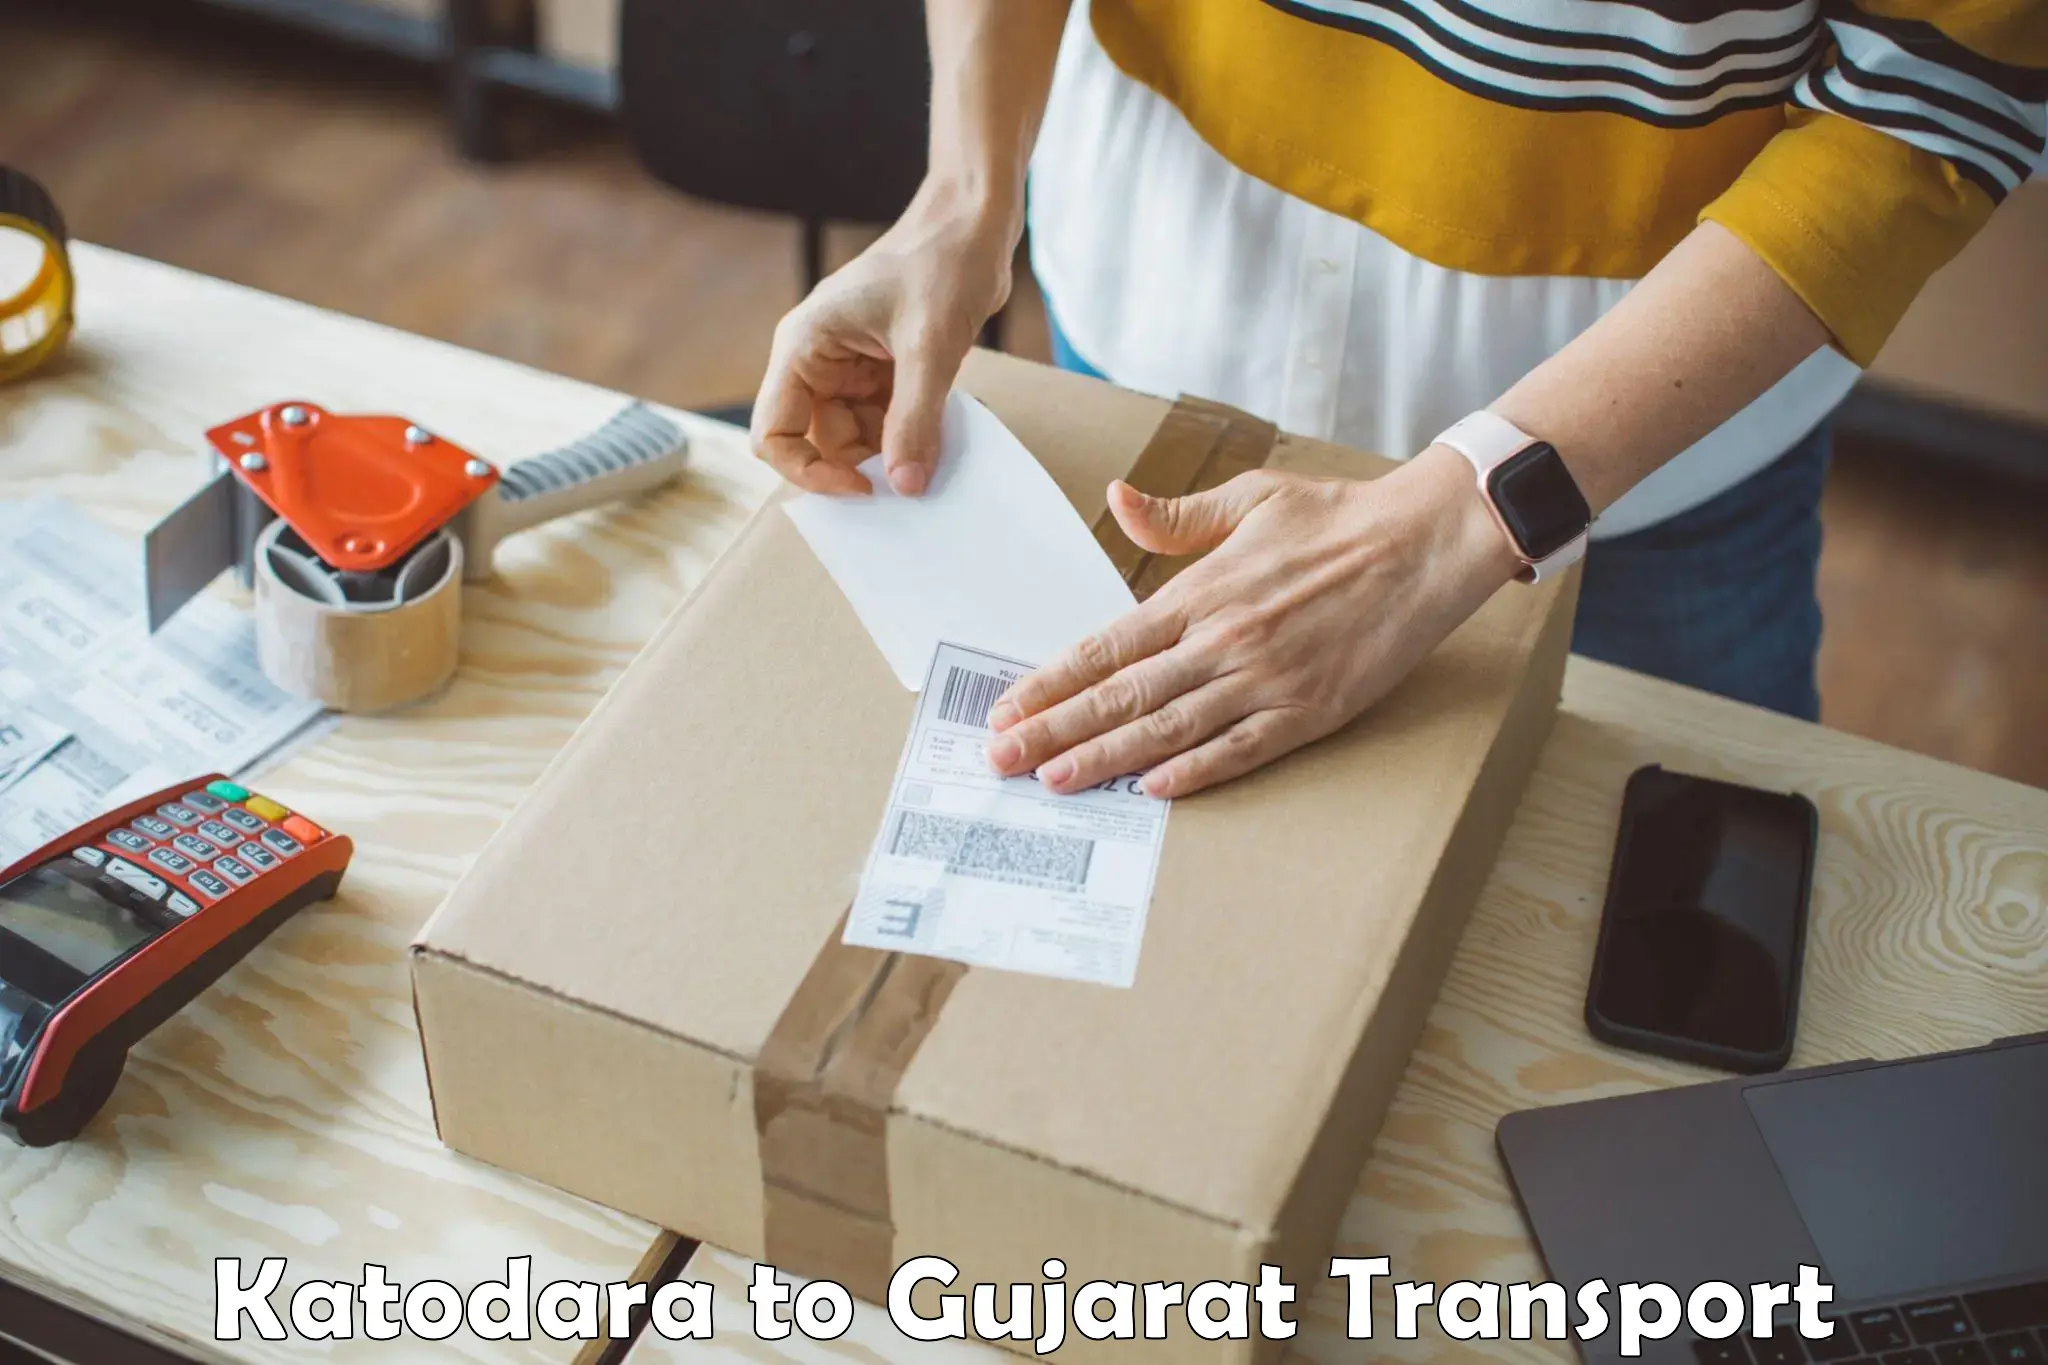 Sending bike to another city Katodara to Gujarat